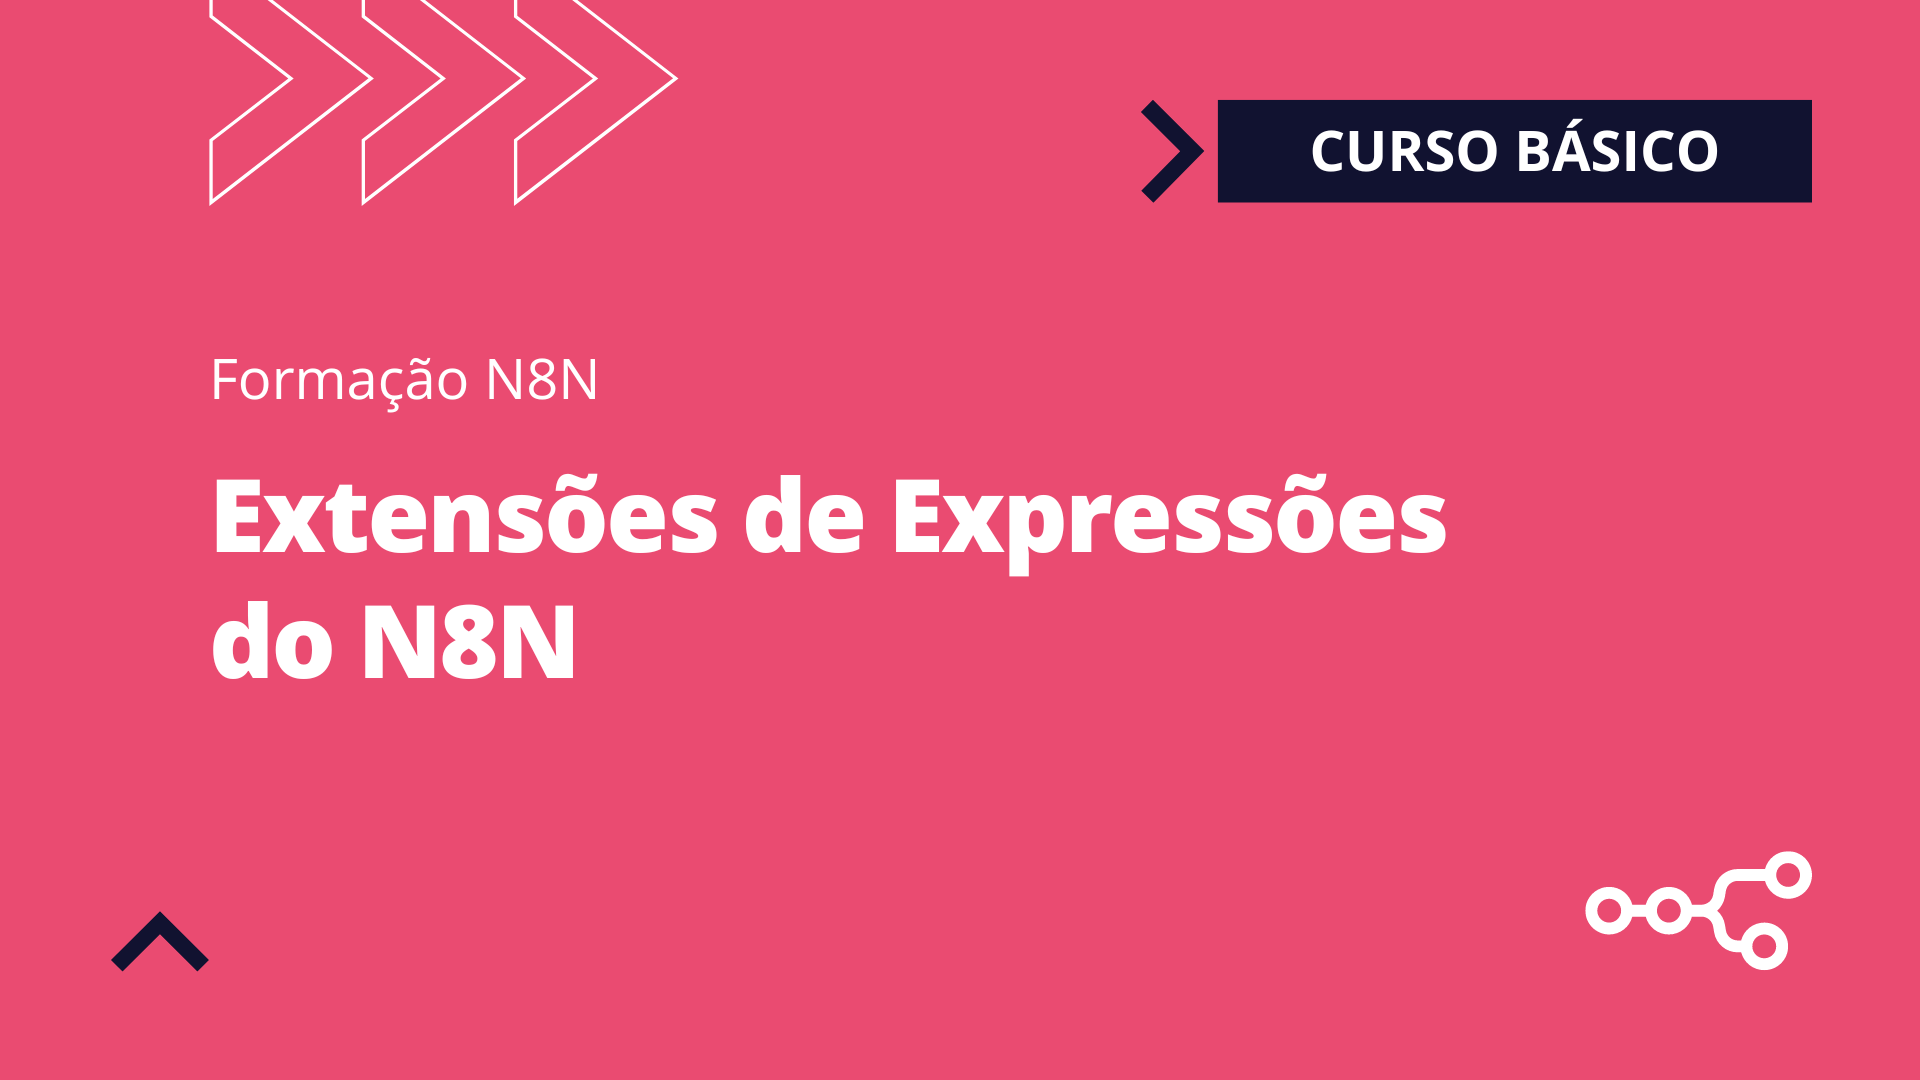 Extensões de Expressões do N8N